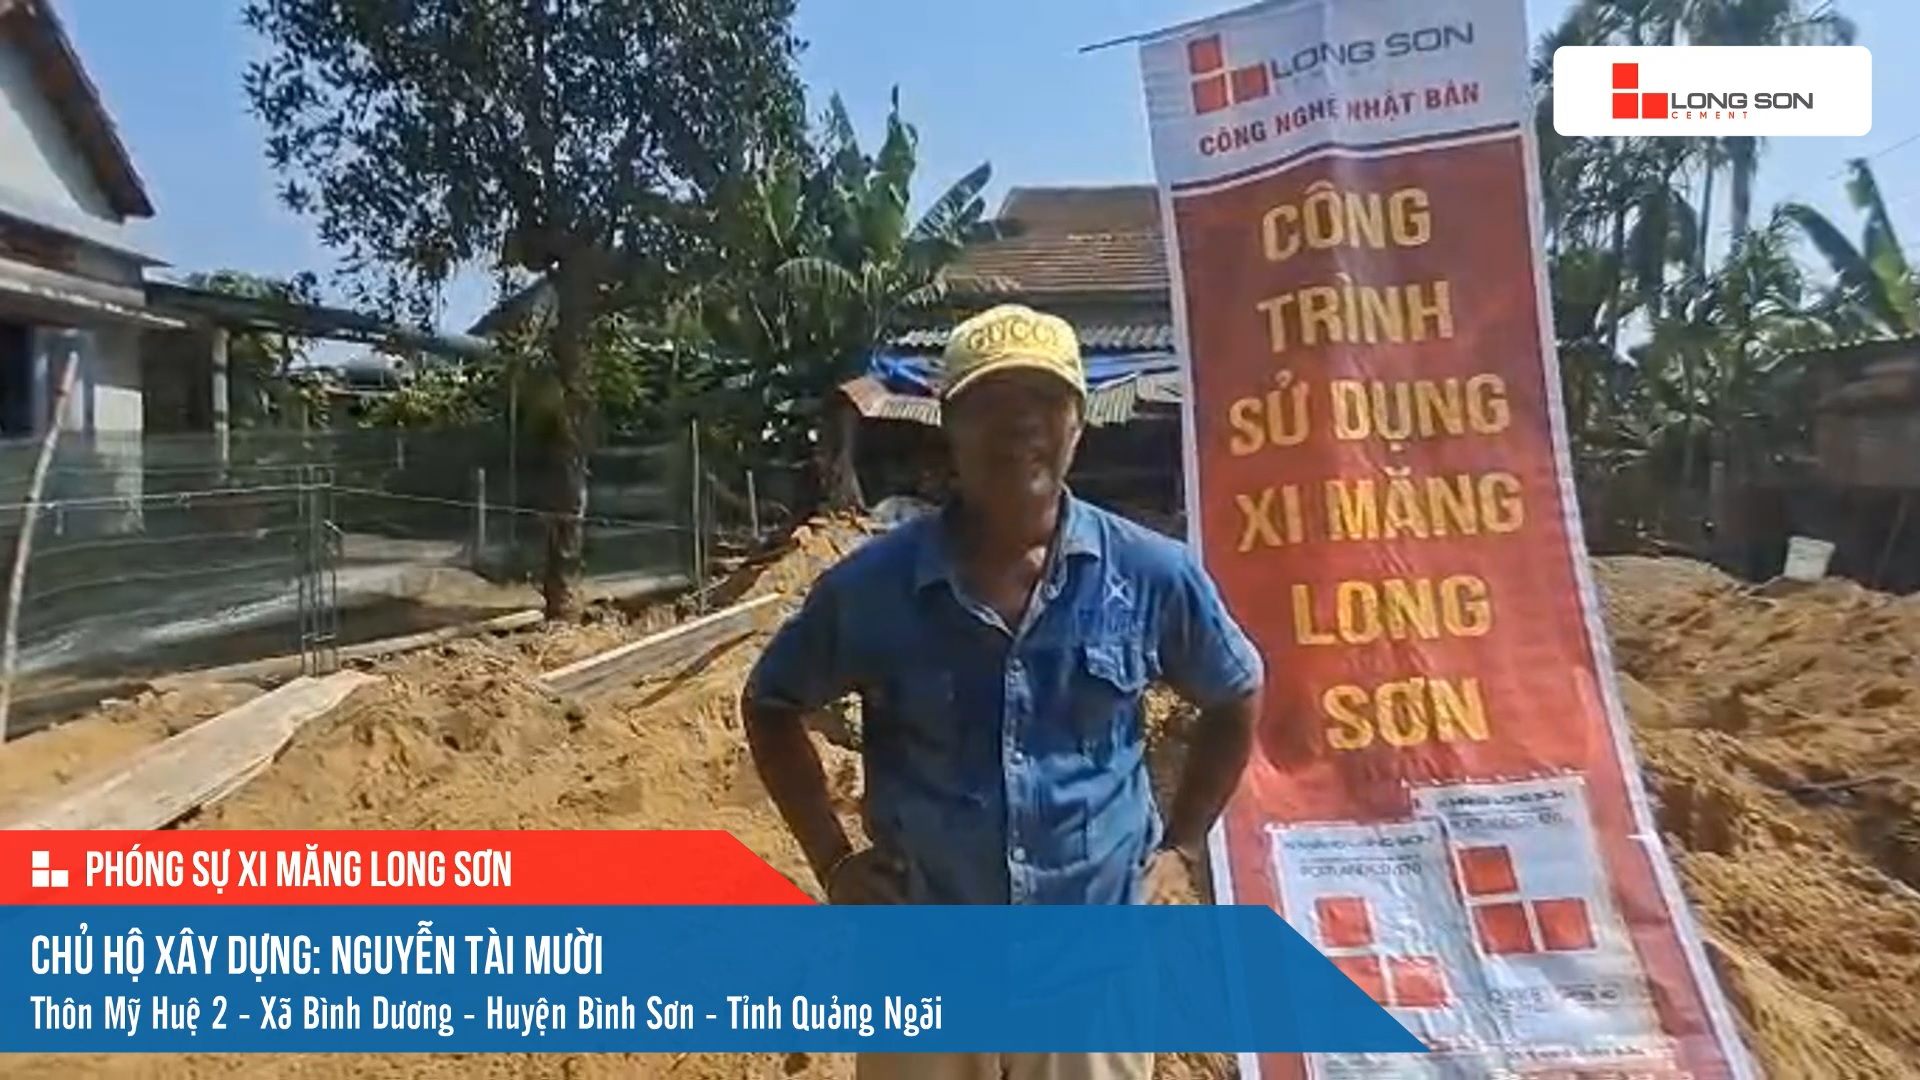 Công trình sử dụng Xi măng Long Sơn tại Quang Ngãi 20.05.2023